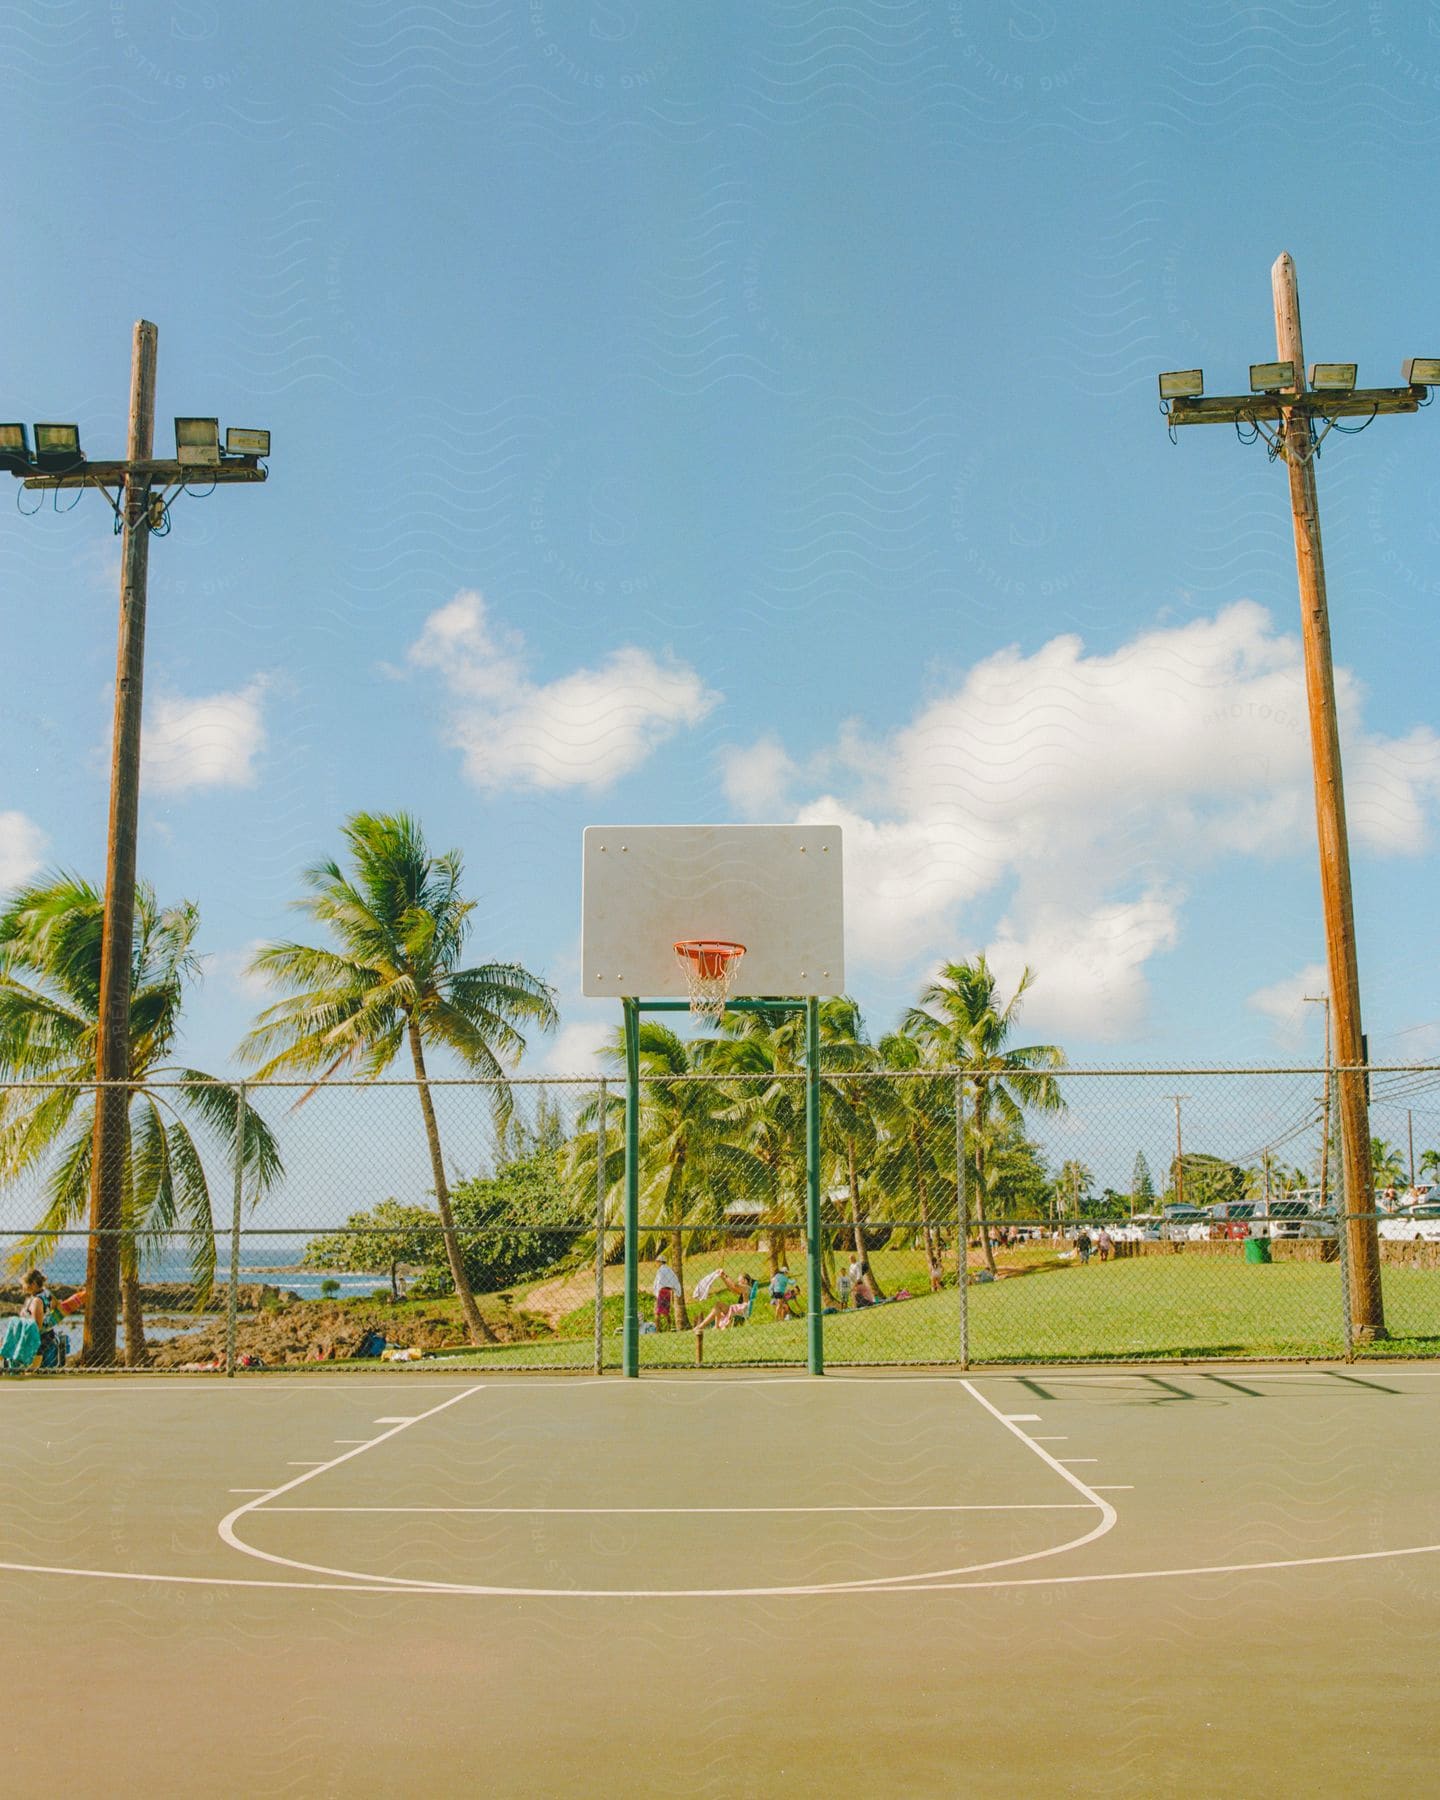 A basketball hoop in a coastal setting